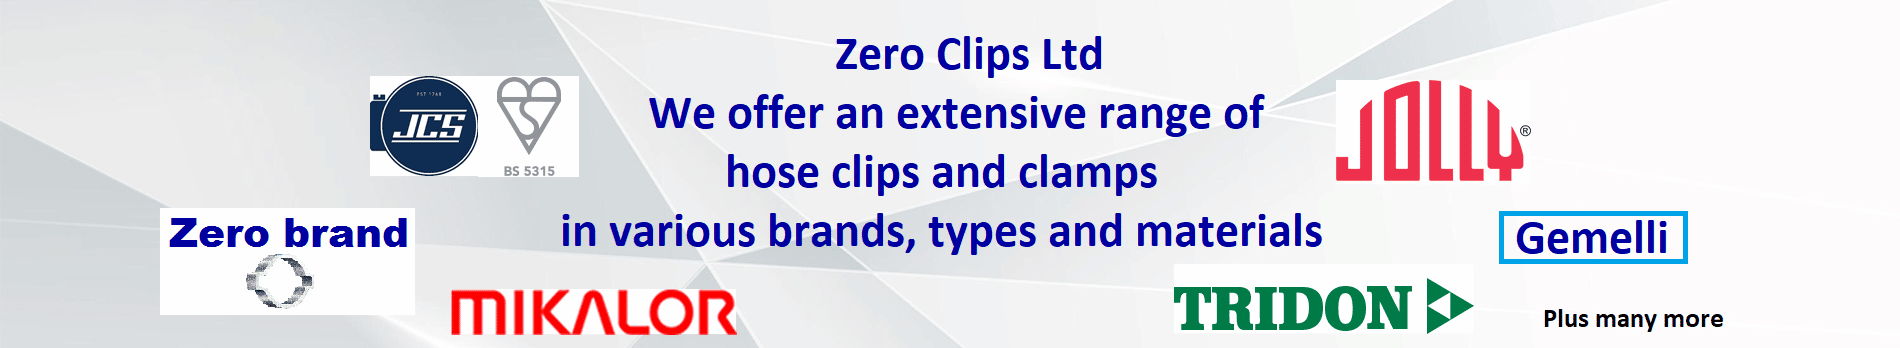 Zero Clips Brand-Banner